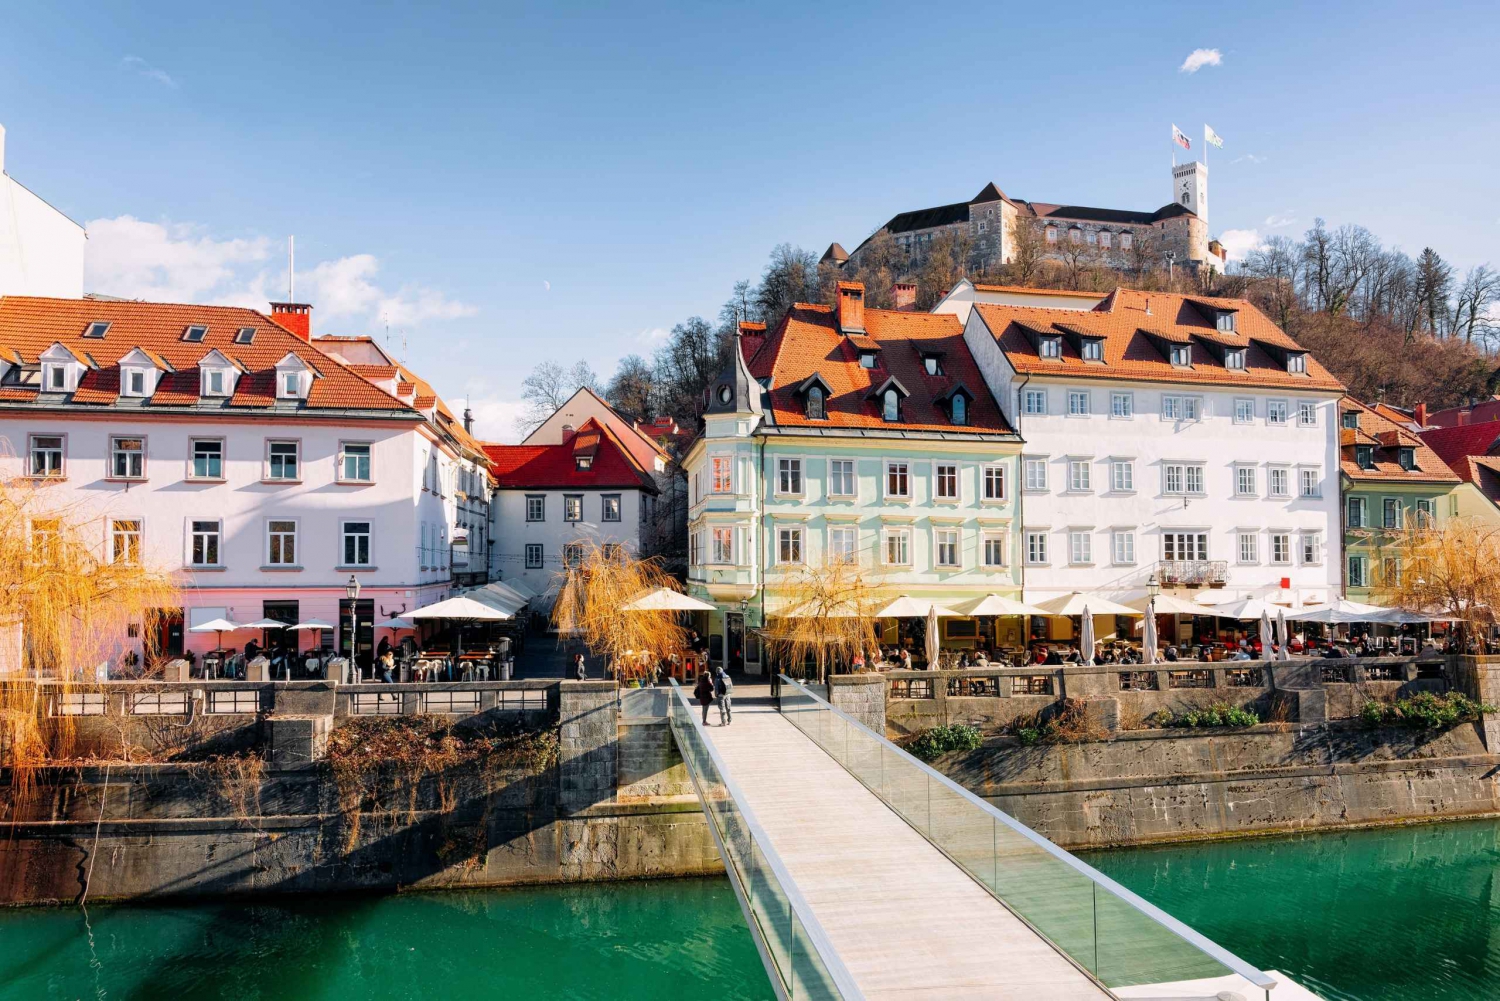 Ljubljana: Capture os pontos mais fotogênicos com um morador local